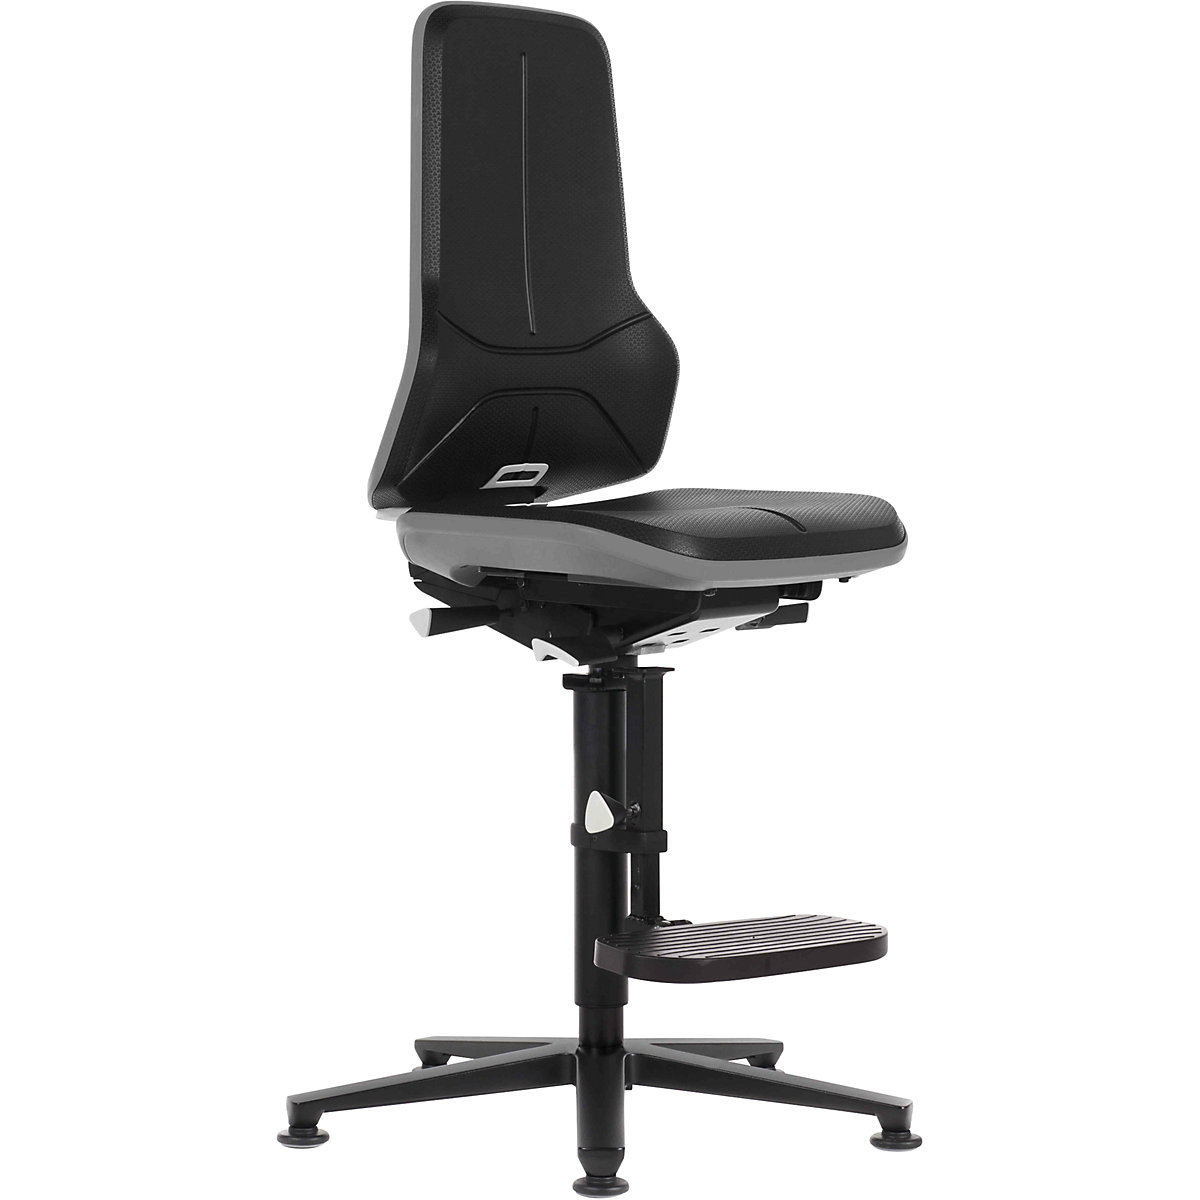 Radna okretna stolica NEON, kliznik, podrška za penjanje – bimos, stalni kontakt, PU pjena, fleksibilna traka u sivoj boji-13